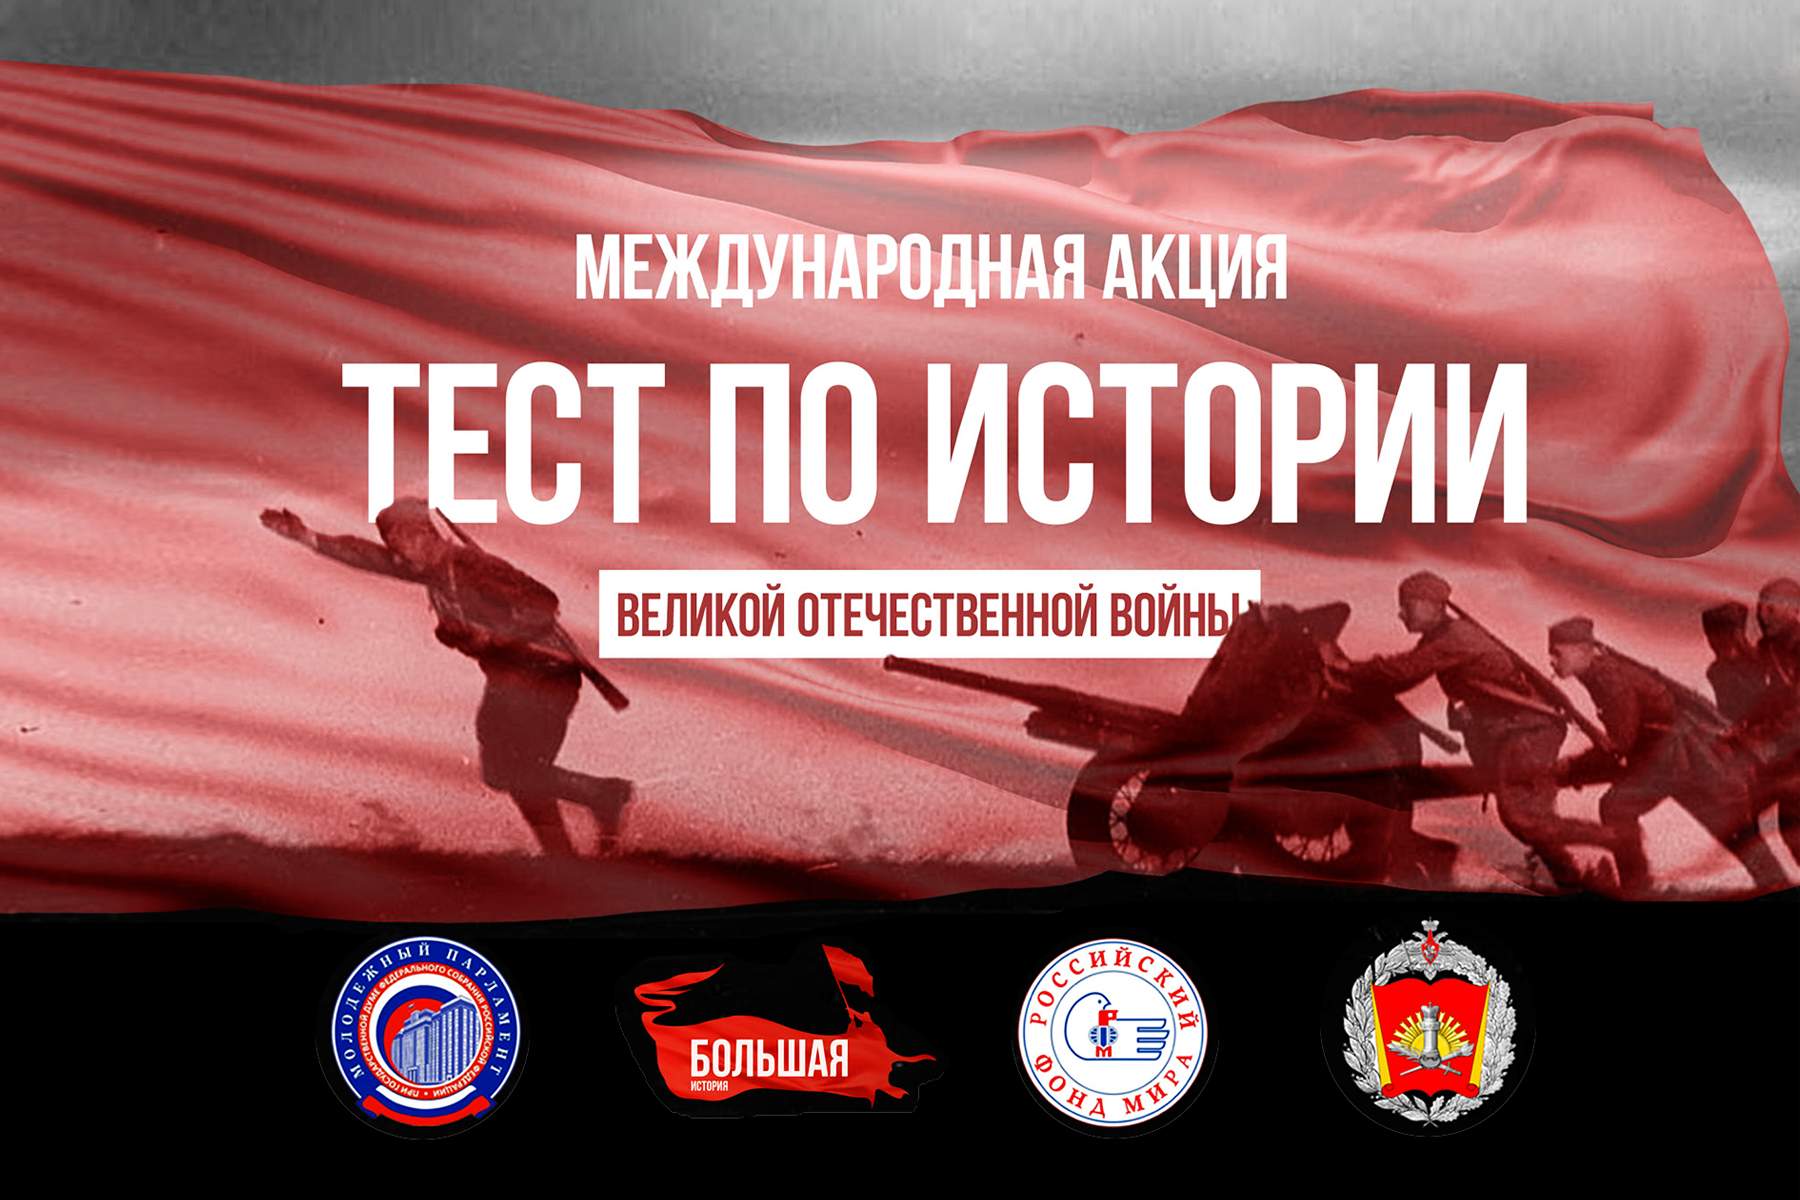 Акция для студентов ВГУЭС: «Тест по истории Великой Отечественной войны» пройдет 3 декабря в онлайн-формате